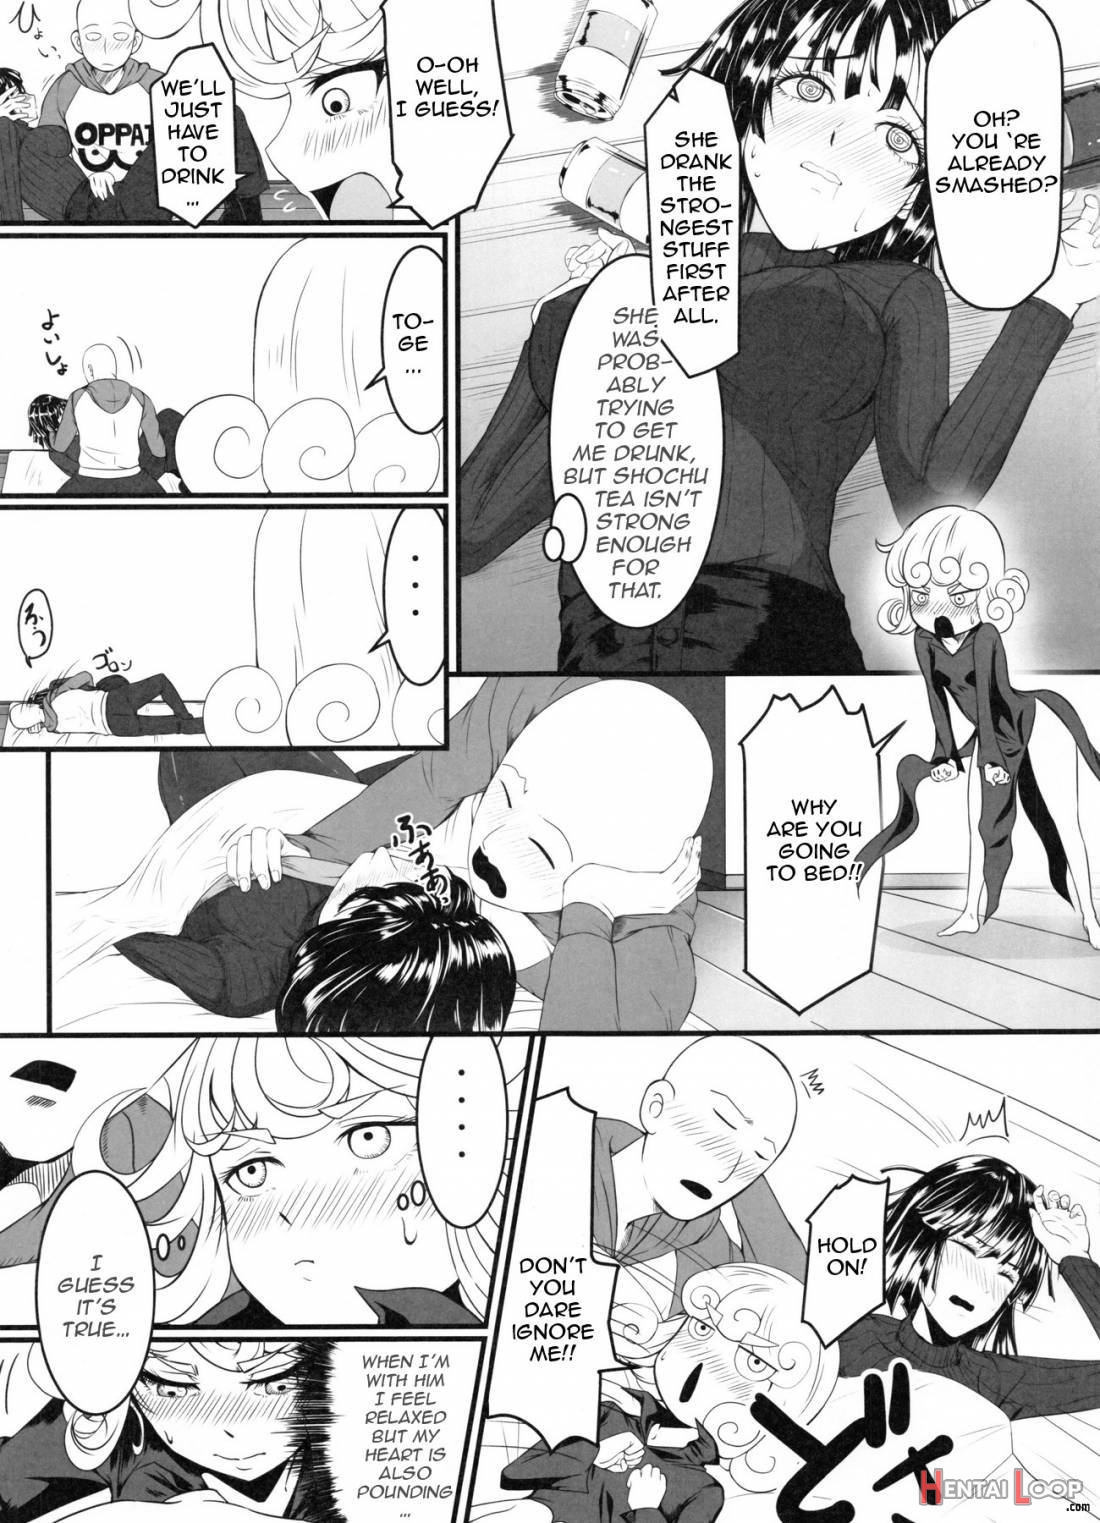 Dekoboko Love Sister 2-gekime page 4